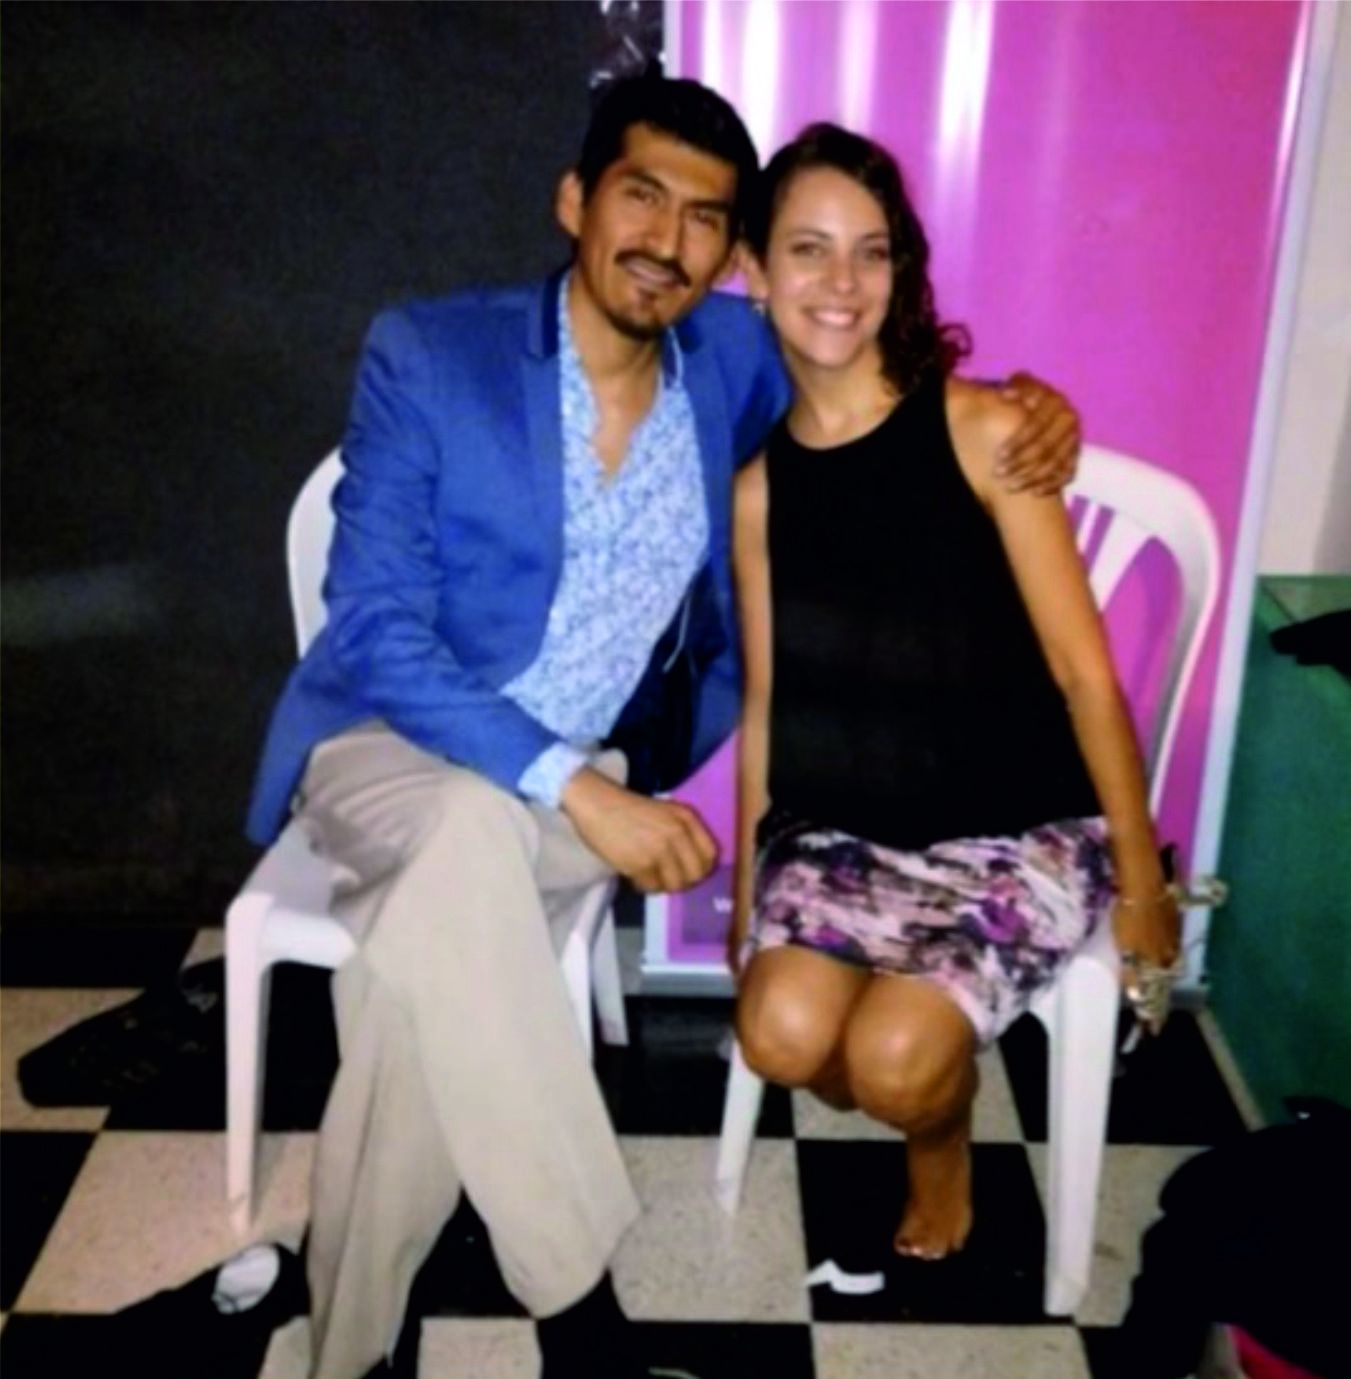 Benjamín Galián junto a Carla Zarzoso, su pareja de baile durante la gala en CAJA